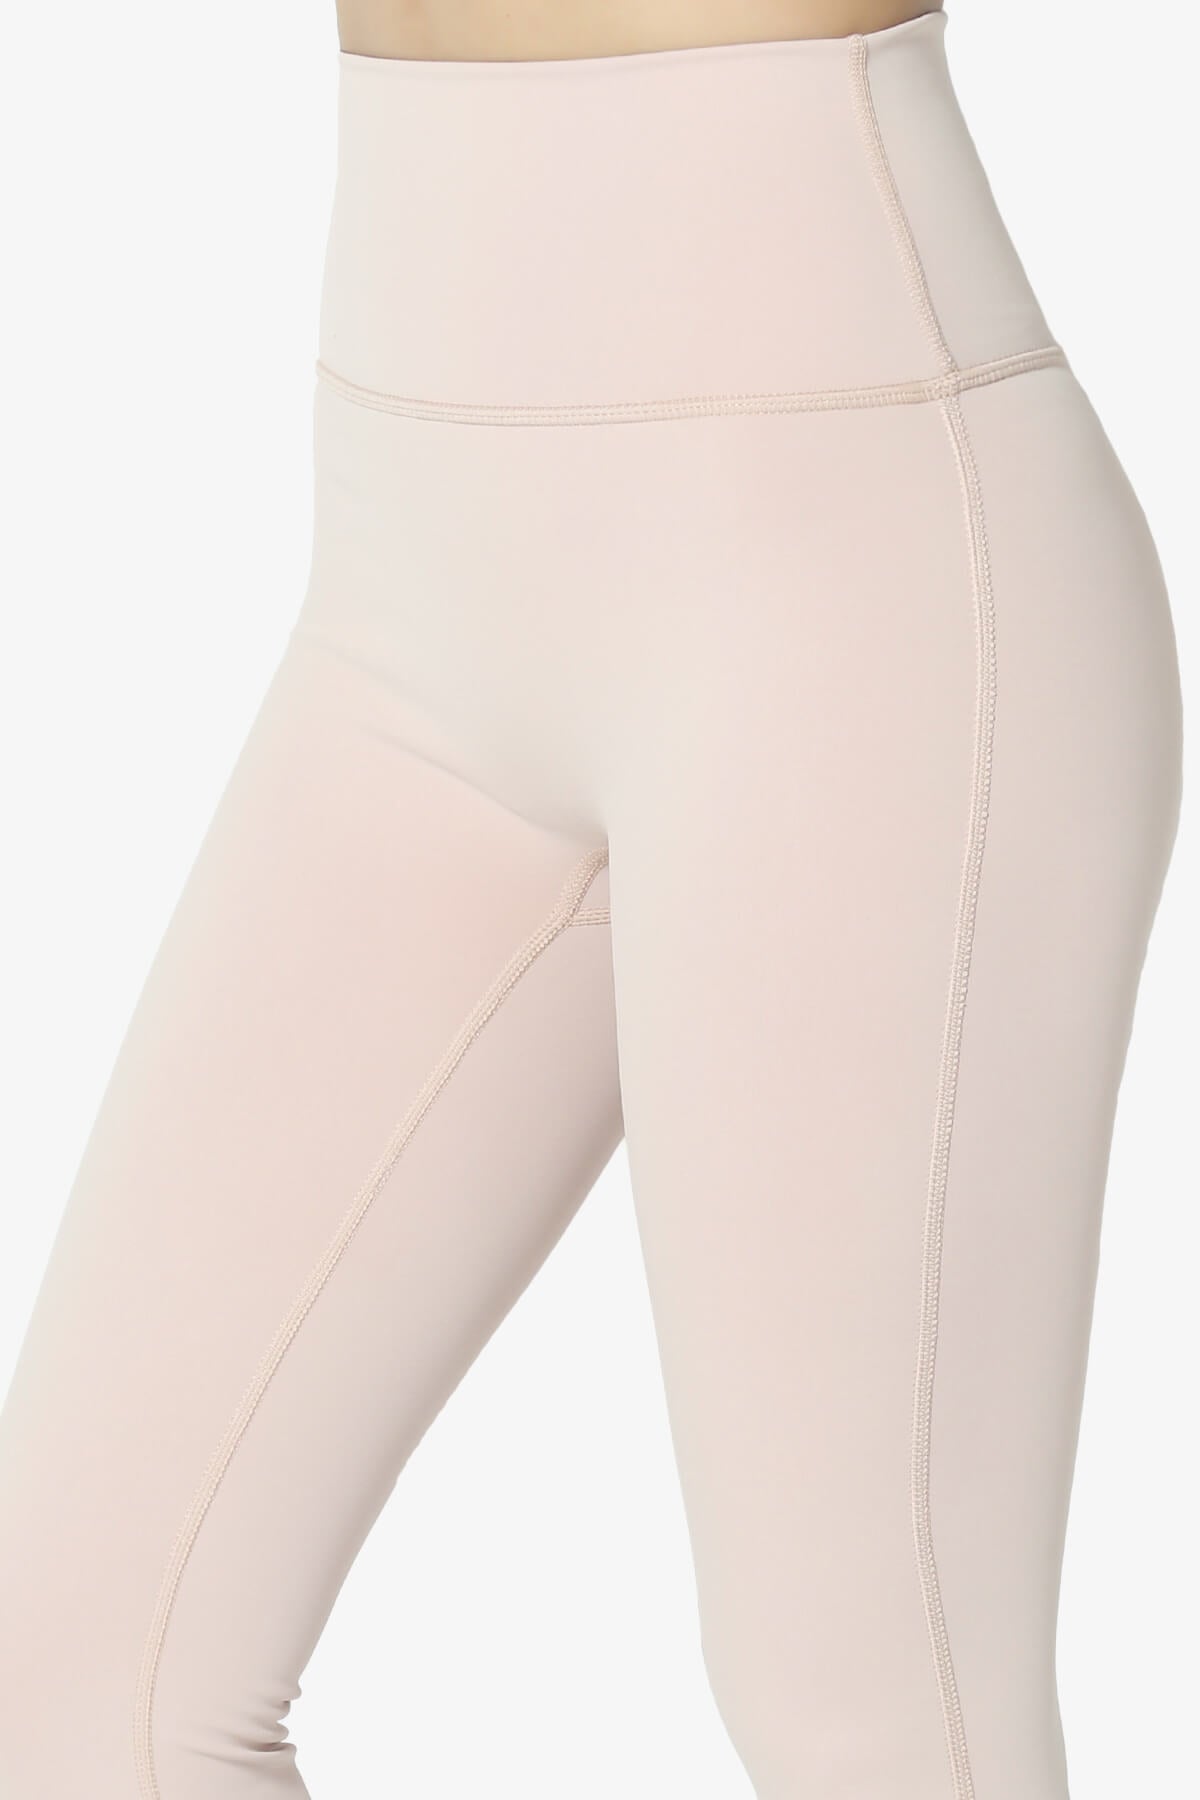 ALO Yoga, Pants & Jumpsuits, Alo Yoga High Waist Airbrush Leggings Light  Pink